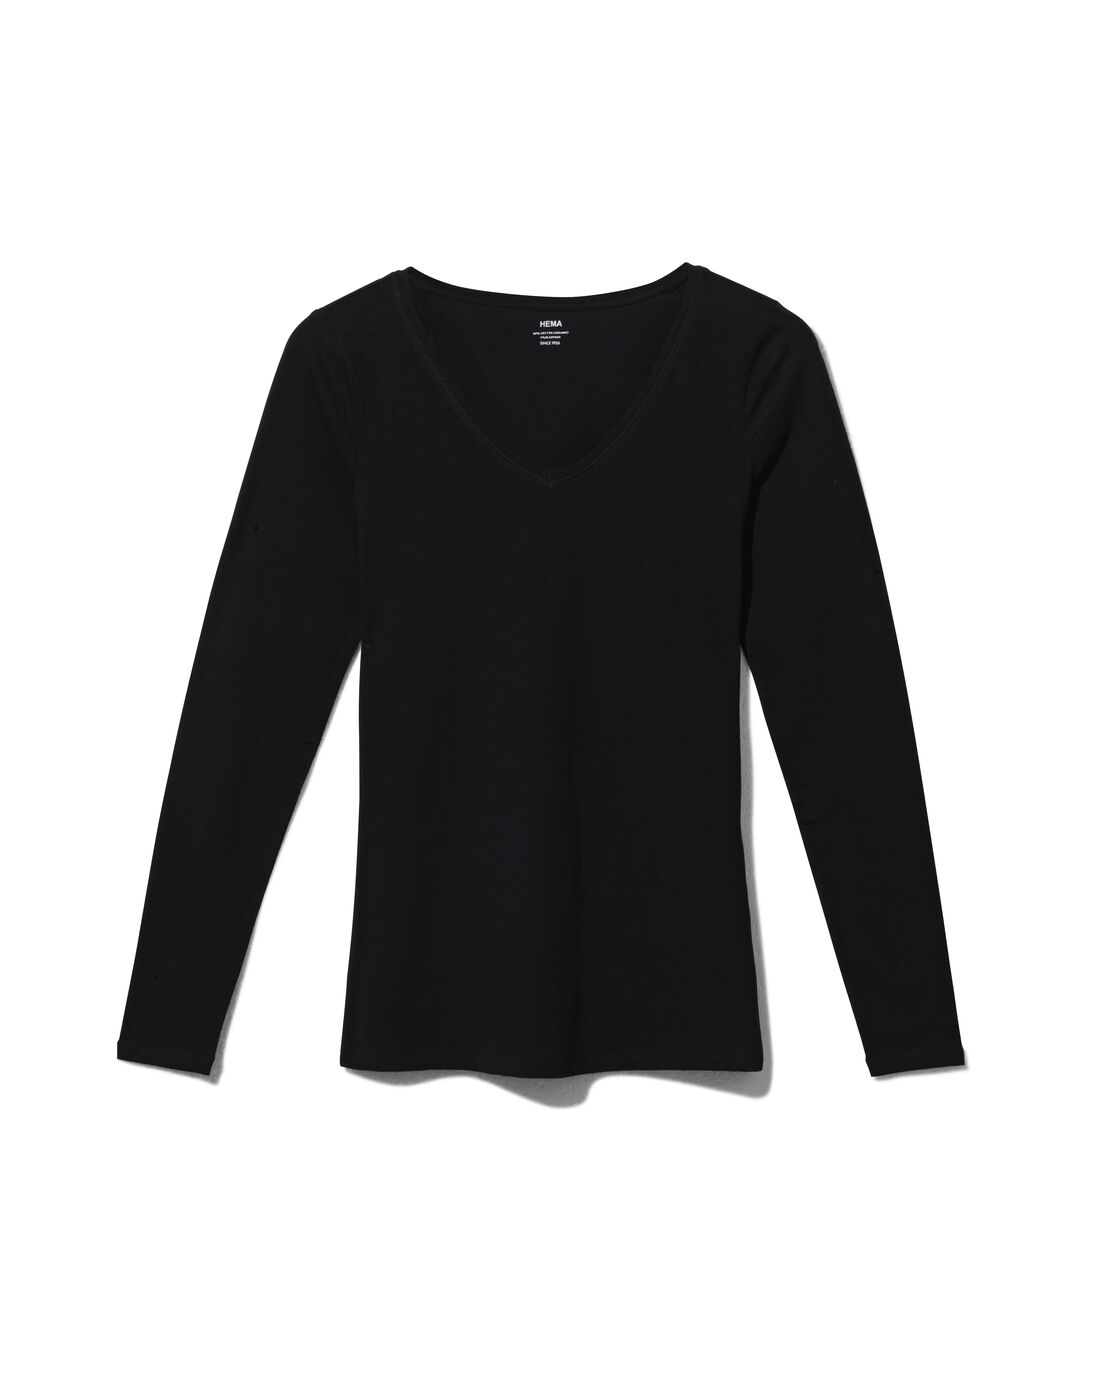 Image of HEMA Dames T-shirt Biologisch Katoen Zwart (zwart)